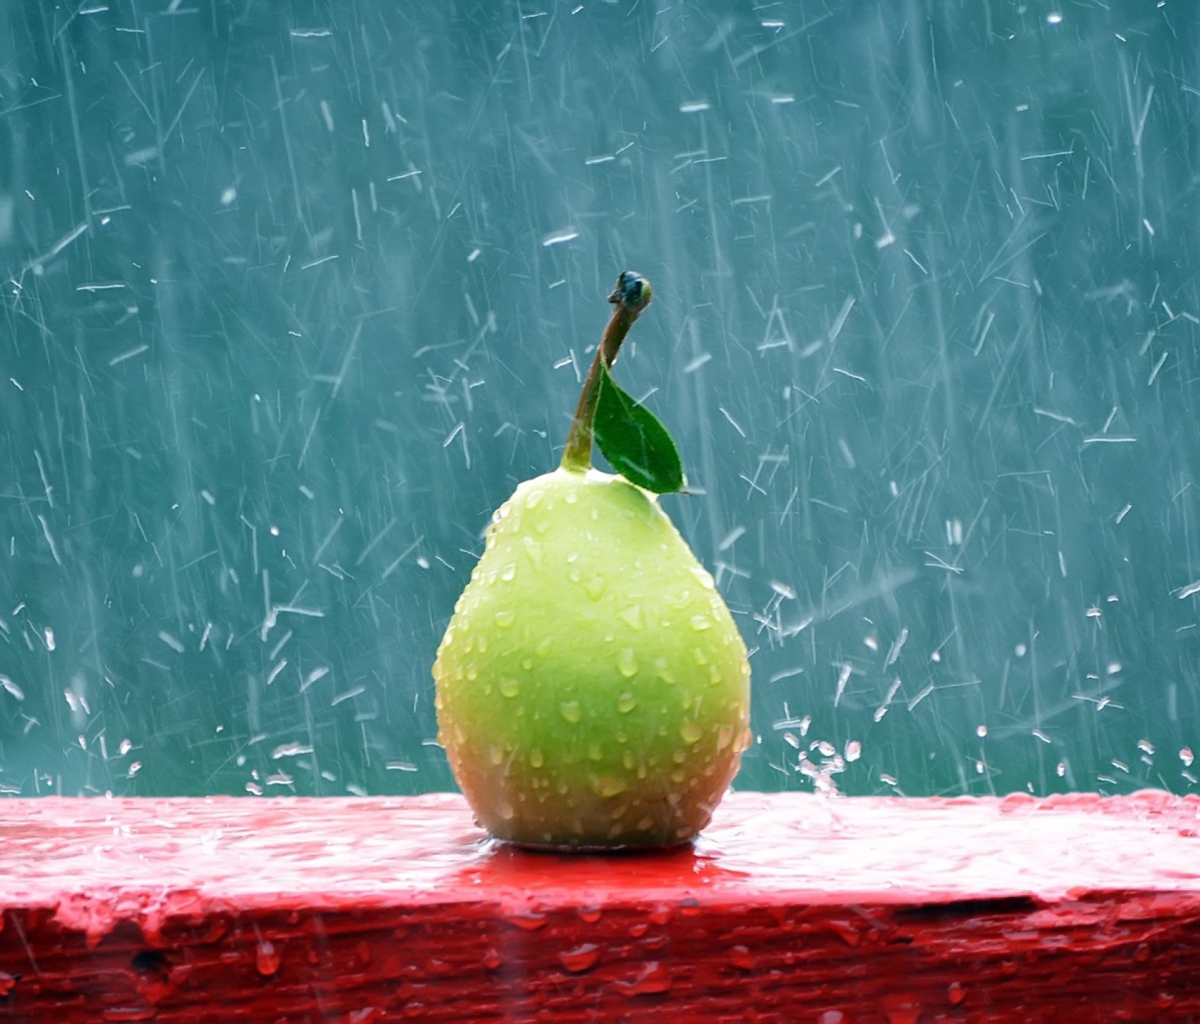 Обои Green Pear In The Rain 1200x1024